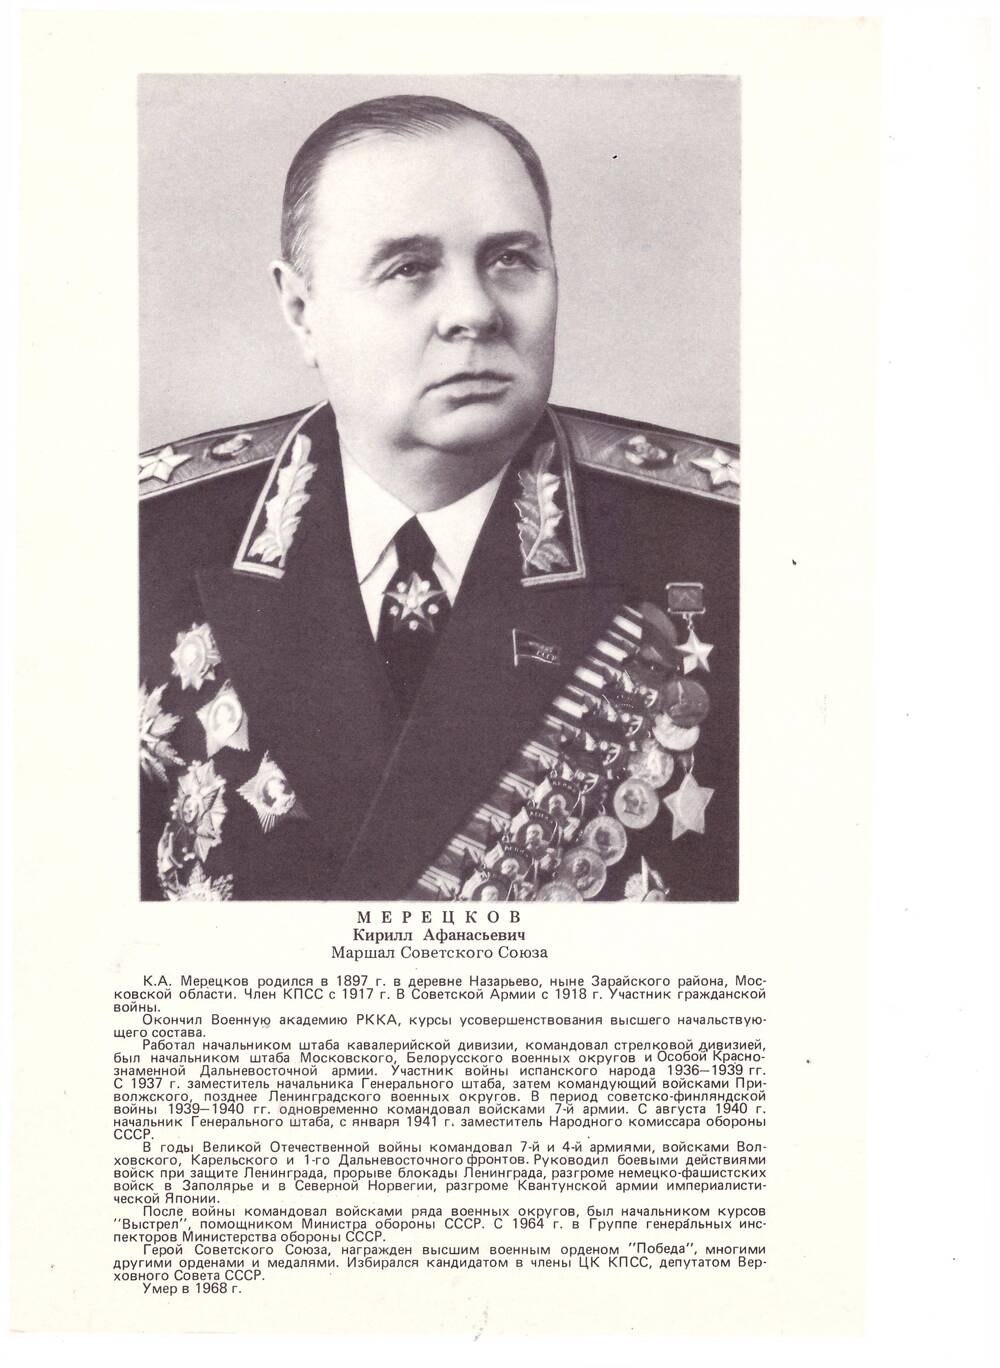 Комплект фотопортретов «Полководцы и военачальники Великой Отечественной войны».